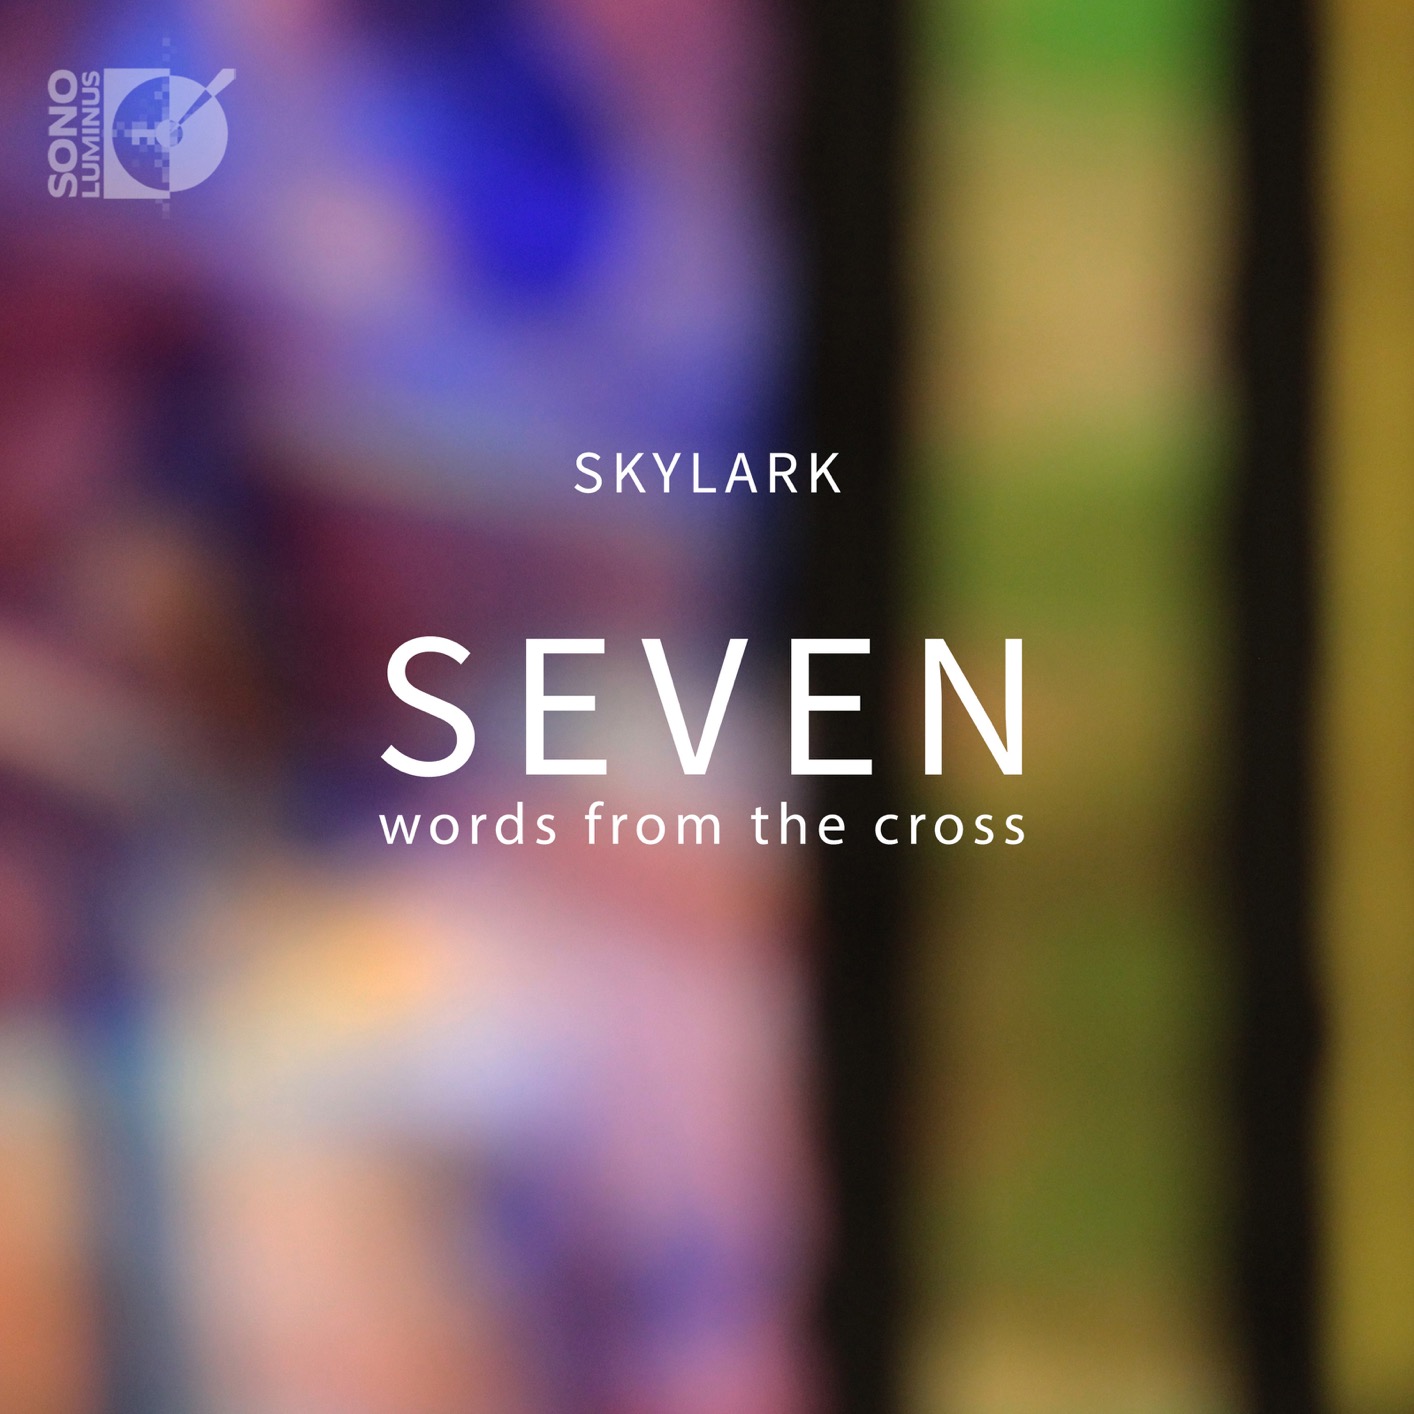 Skylark Vocal Ensemble - Seven Words from the Cross (2018) [FLAC 24bit/192kHz]